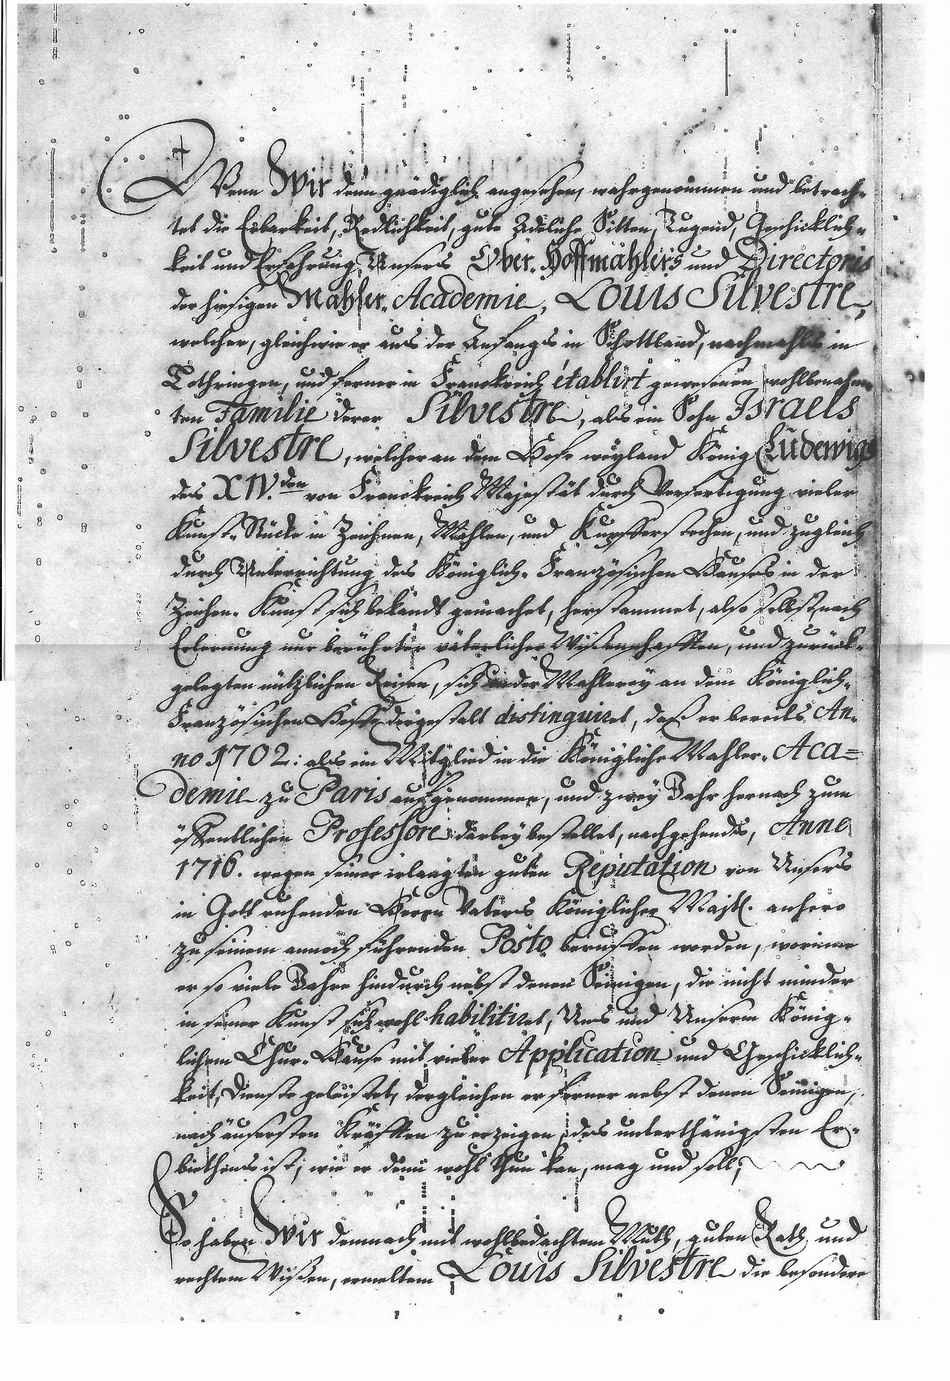 Lettres de noblesse pour Louis de Silvestre et Nicolas-Charles de Silvestre - Page 2/6